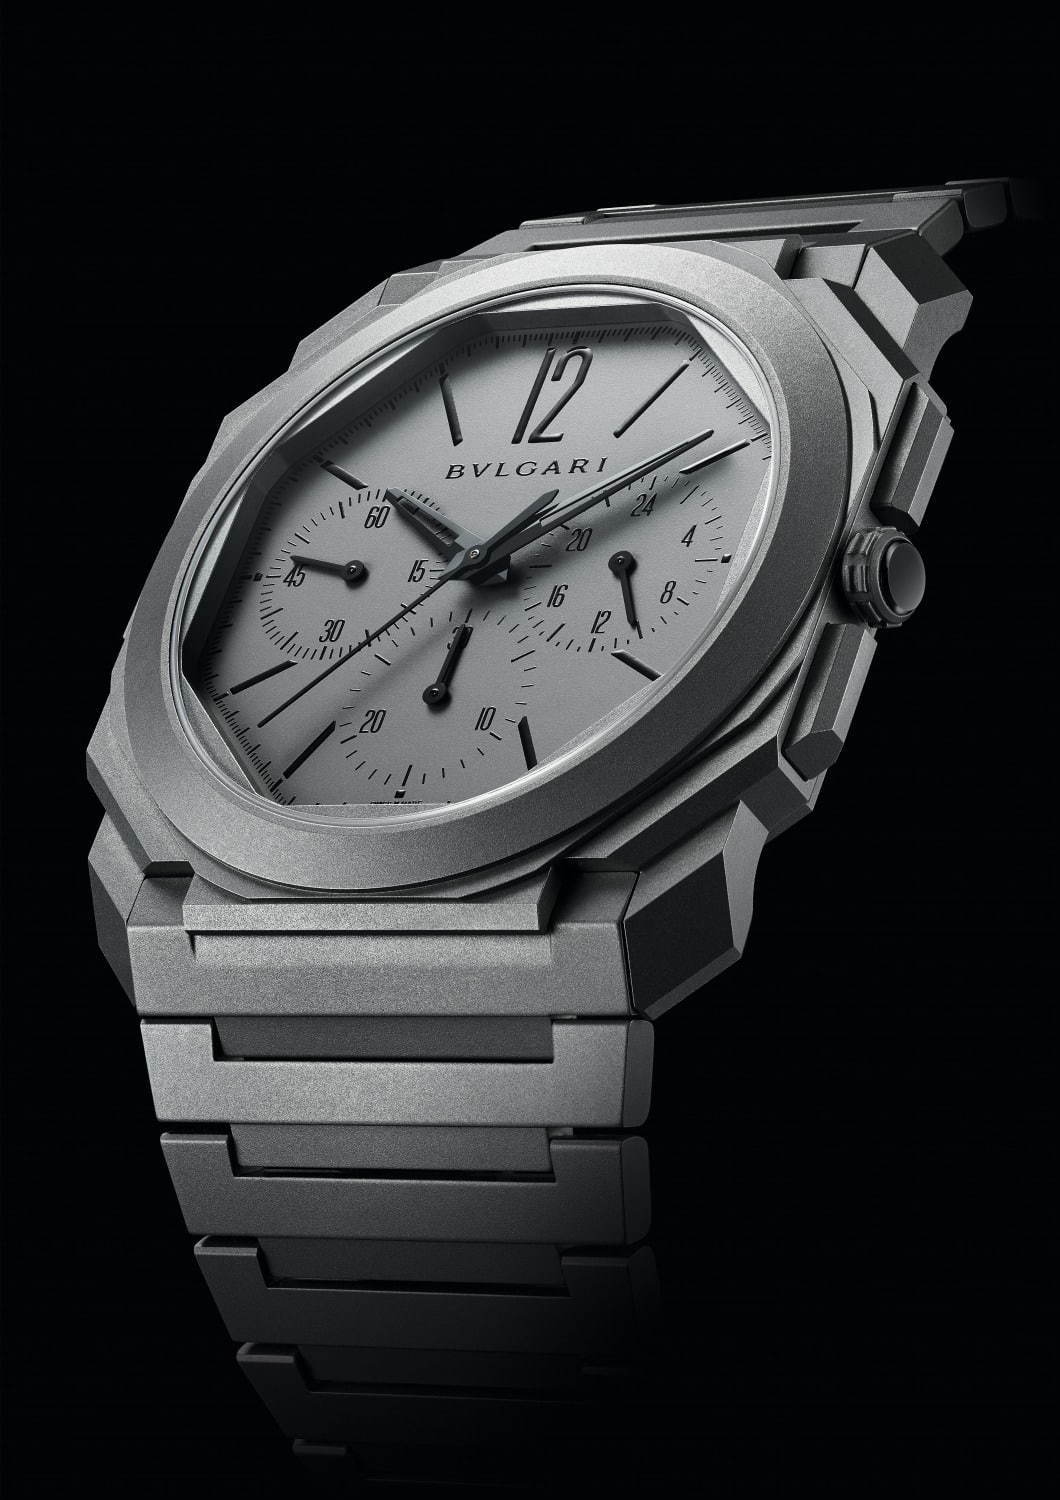 ブルガリのメンズ腕時計 オクト フィニッシモ 世界最薄の機械式クロノグラフ Gmt機能を搭載 ファッションプレス